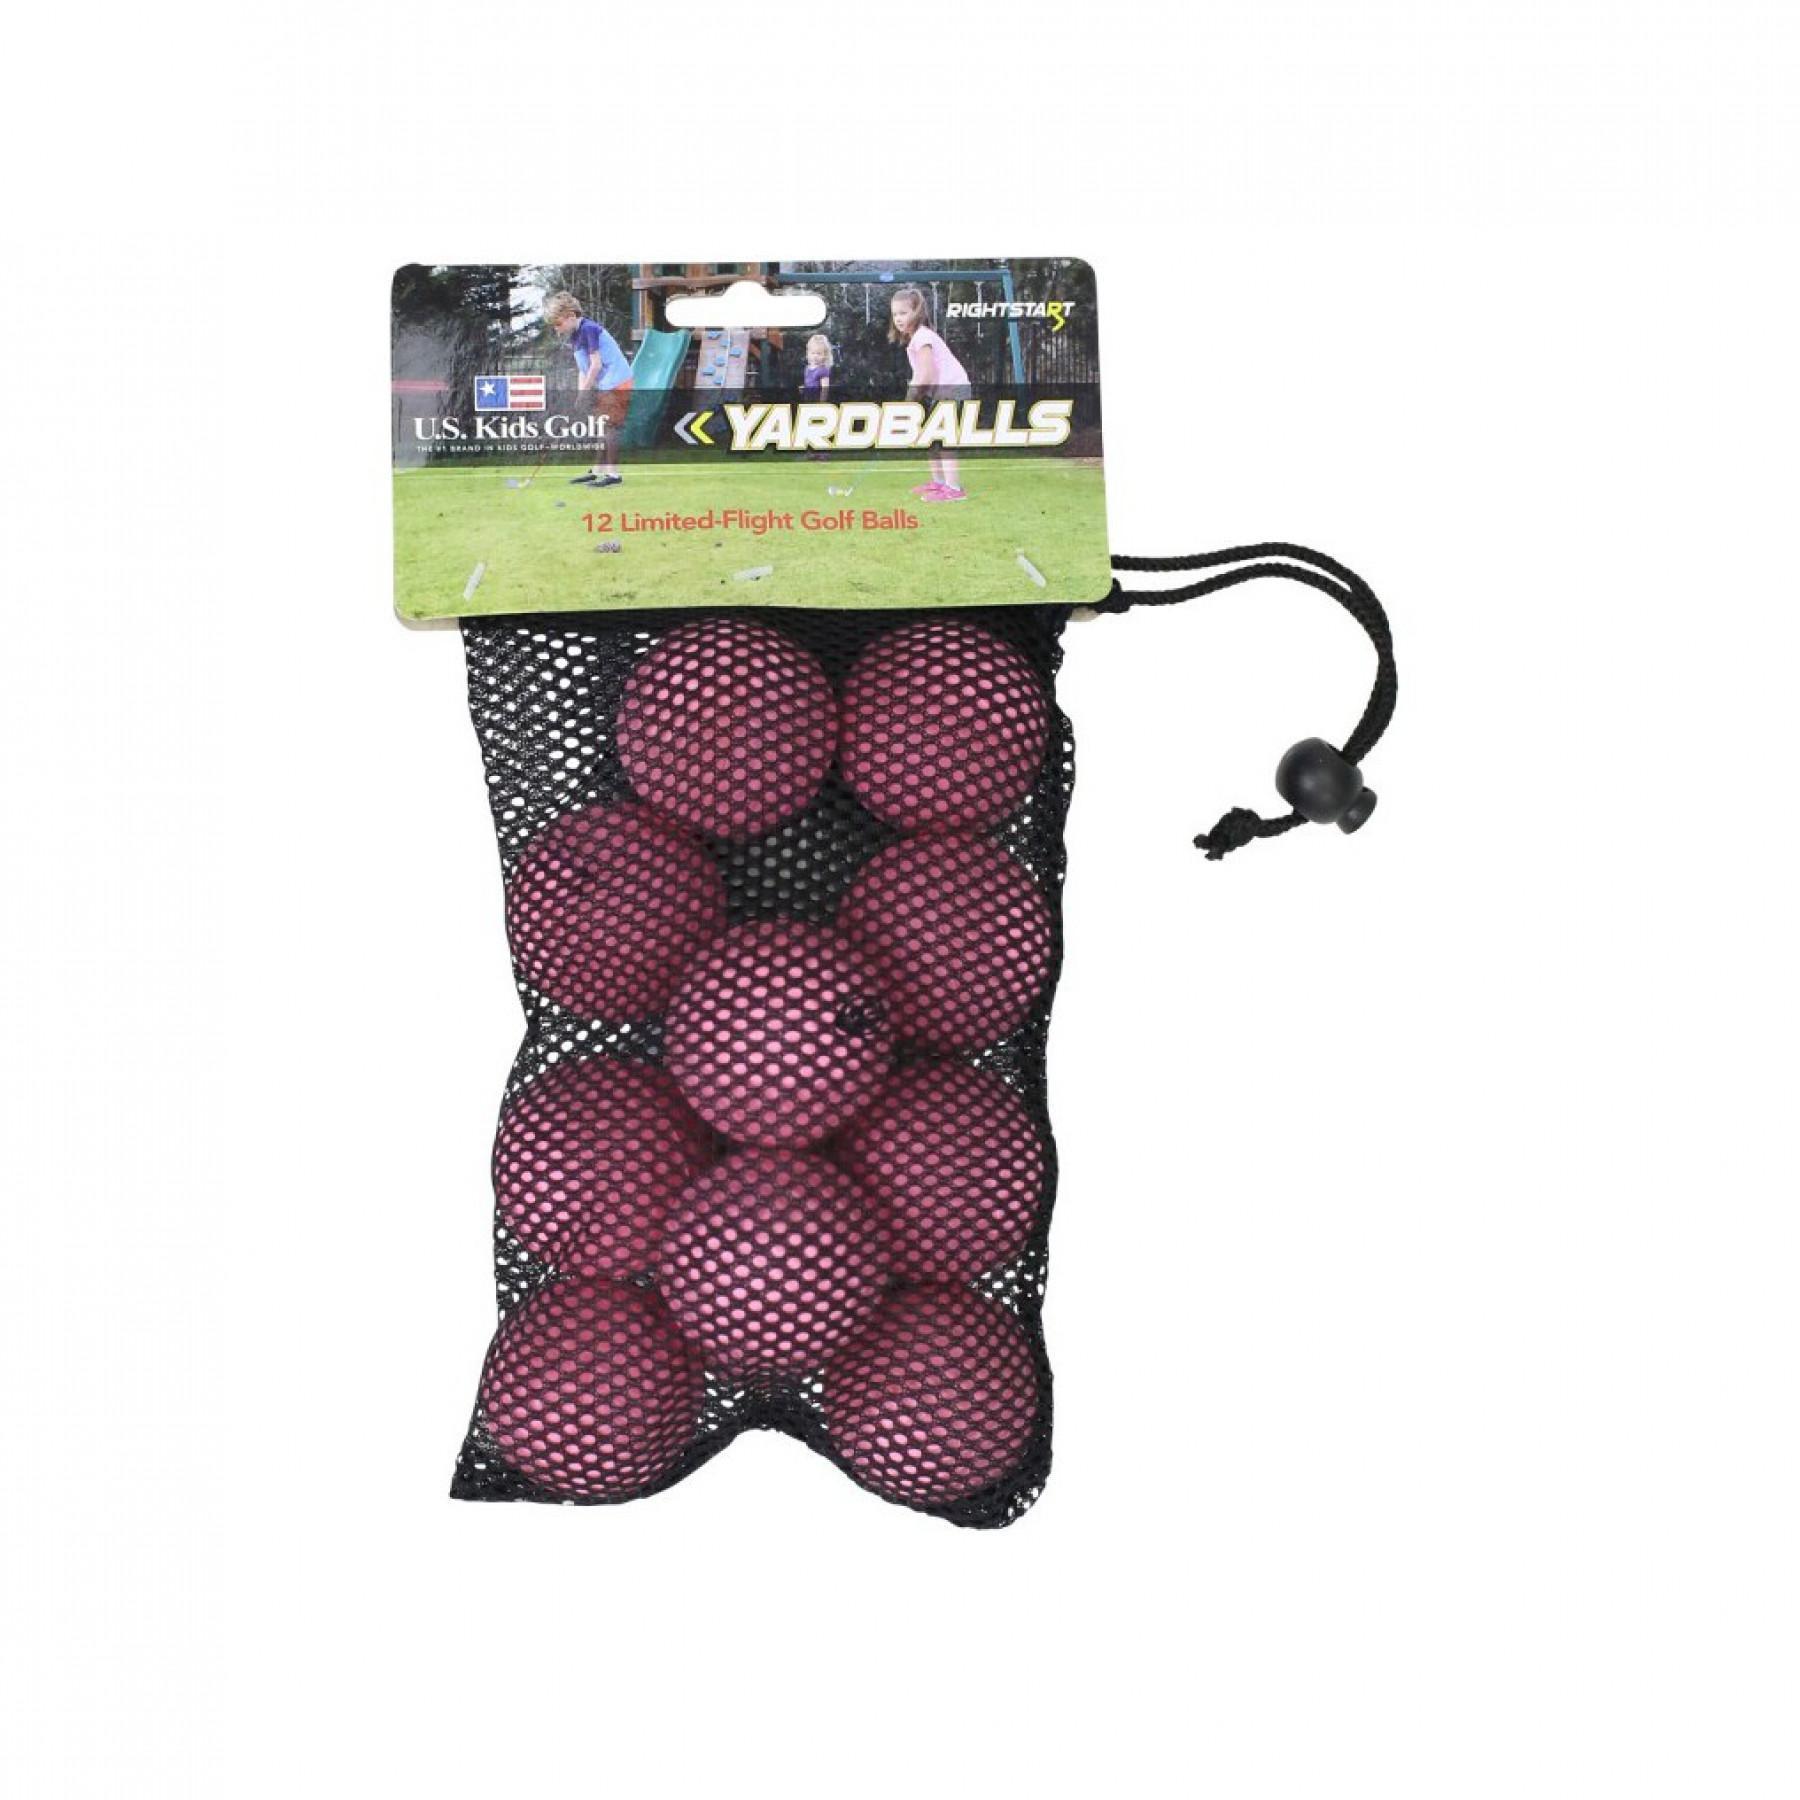 Confezione da 12 palline di schiuma U.S Kids Golf